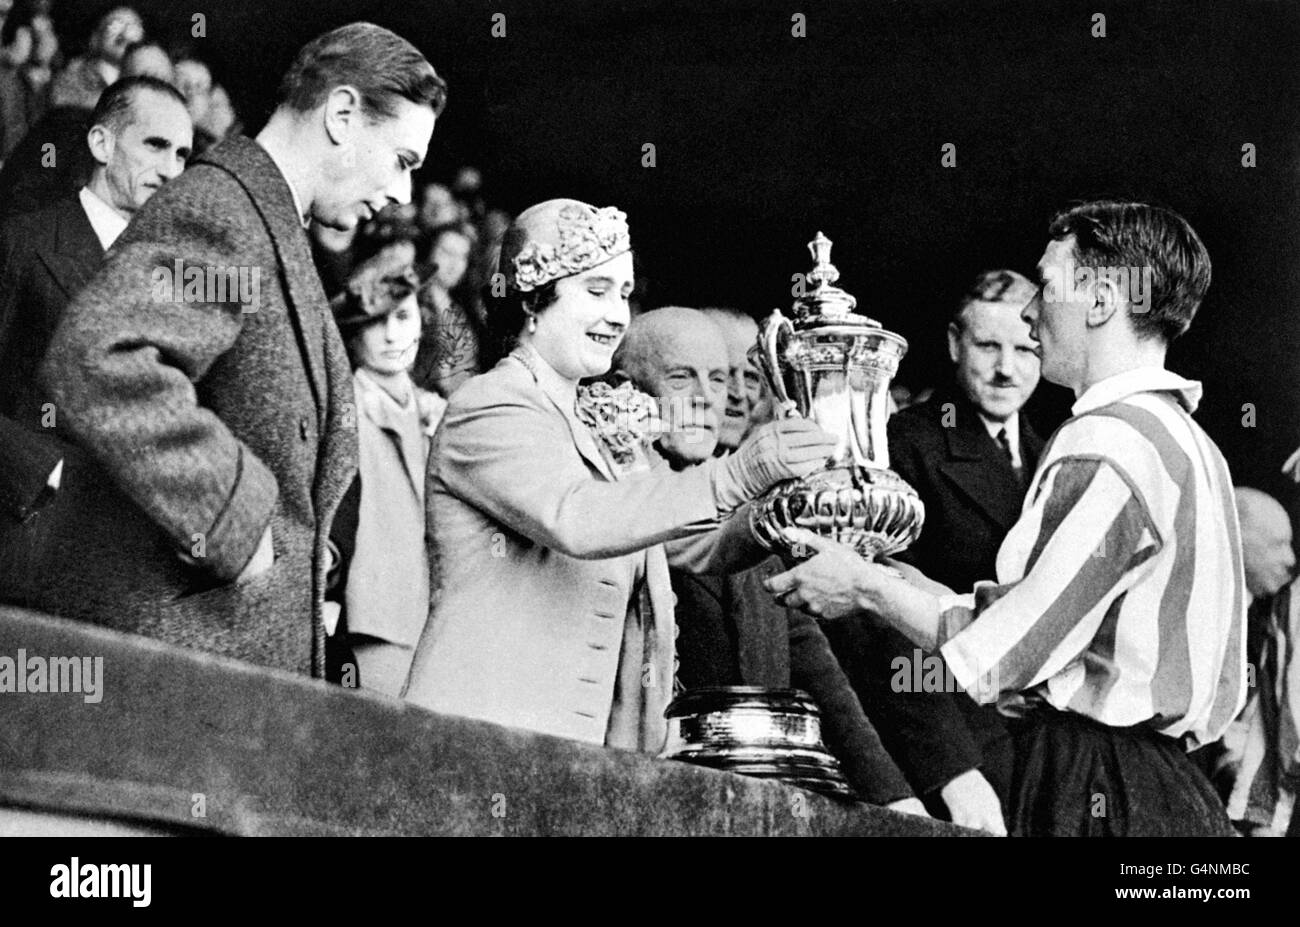 Soccer - coupe FA - finale - Sunderland contre Preston North End - Wembley - 1937.Le capitaine du Sunderland Raich carter (r) reçoit la coupe FA de la Reine (c) Banque D'Images